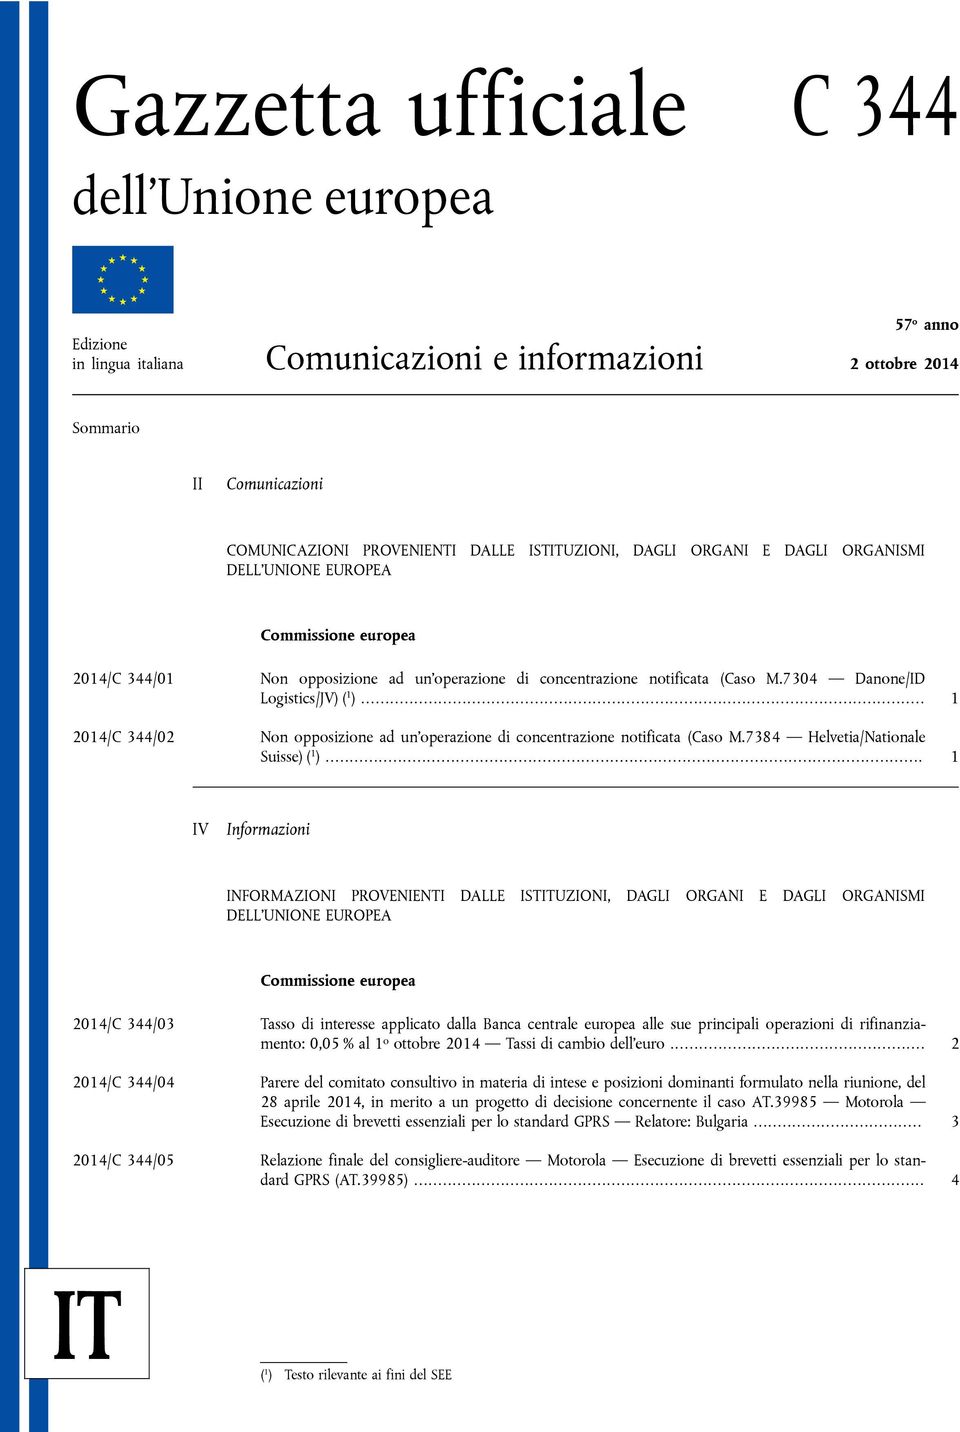 .. 1 2014/C 344/02 Non opposizione ad un operazione di concentrazione notificata (Caso M.7384 Helvetia/Nationale Suisse) ( 1 ).